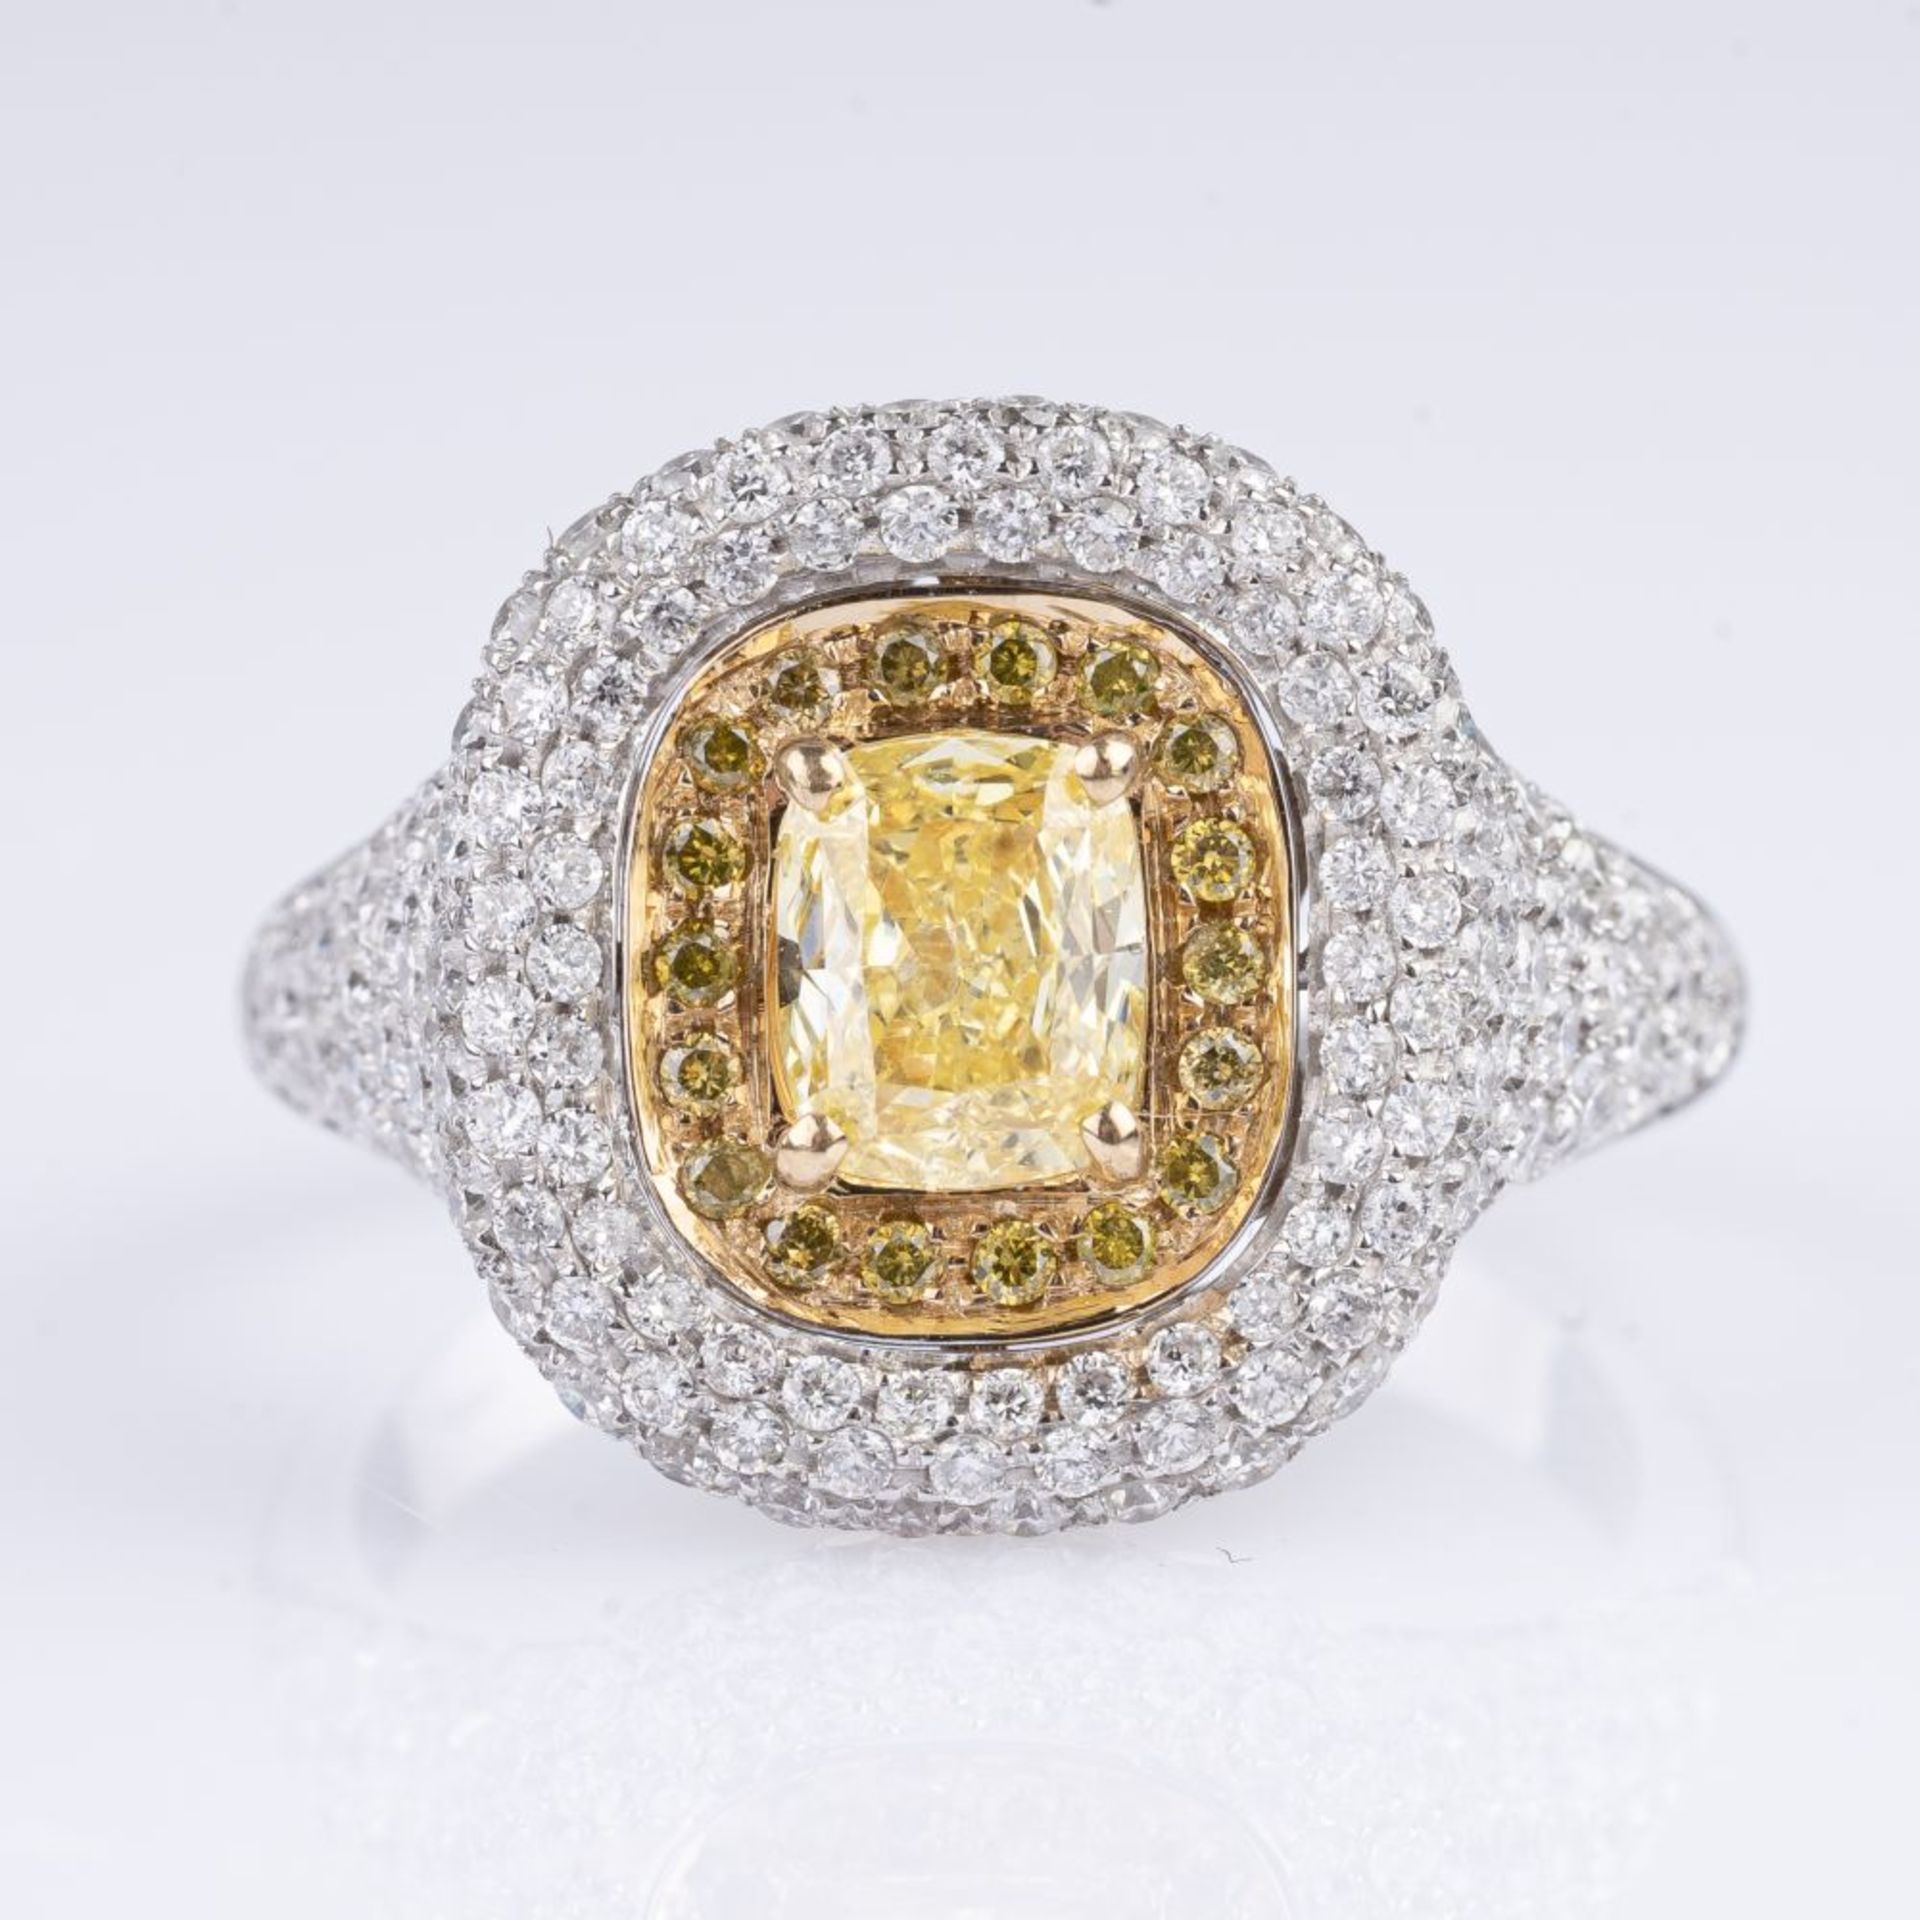 Fancy Diamant-Brillant-Ring.